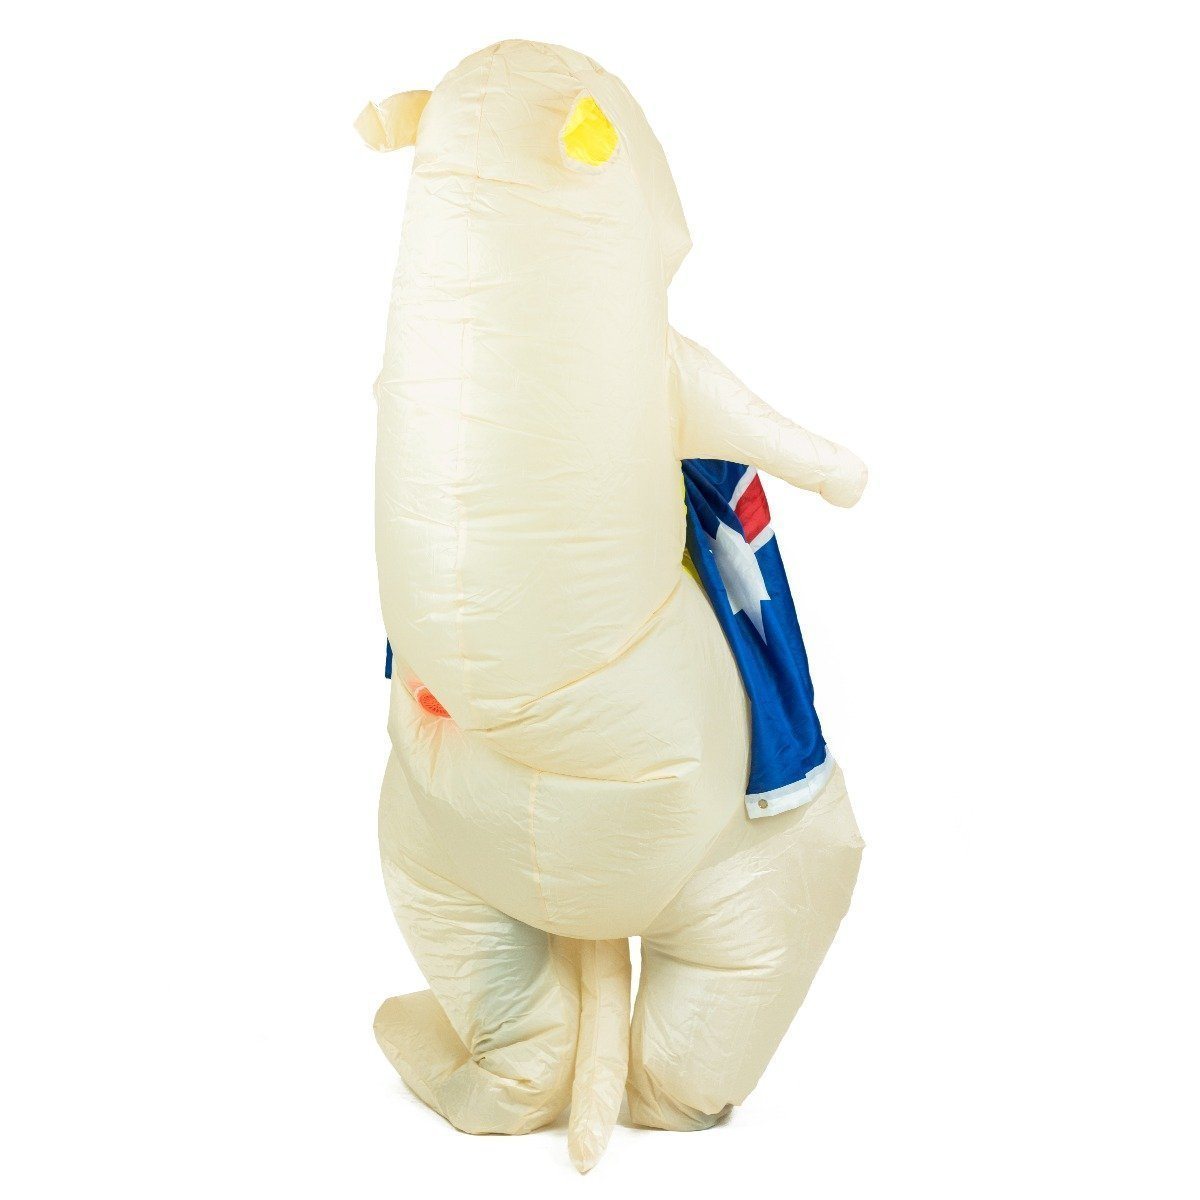 Fancy Dress - Inflatable Kangaroo Costume